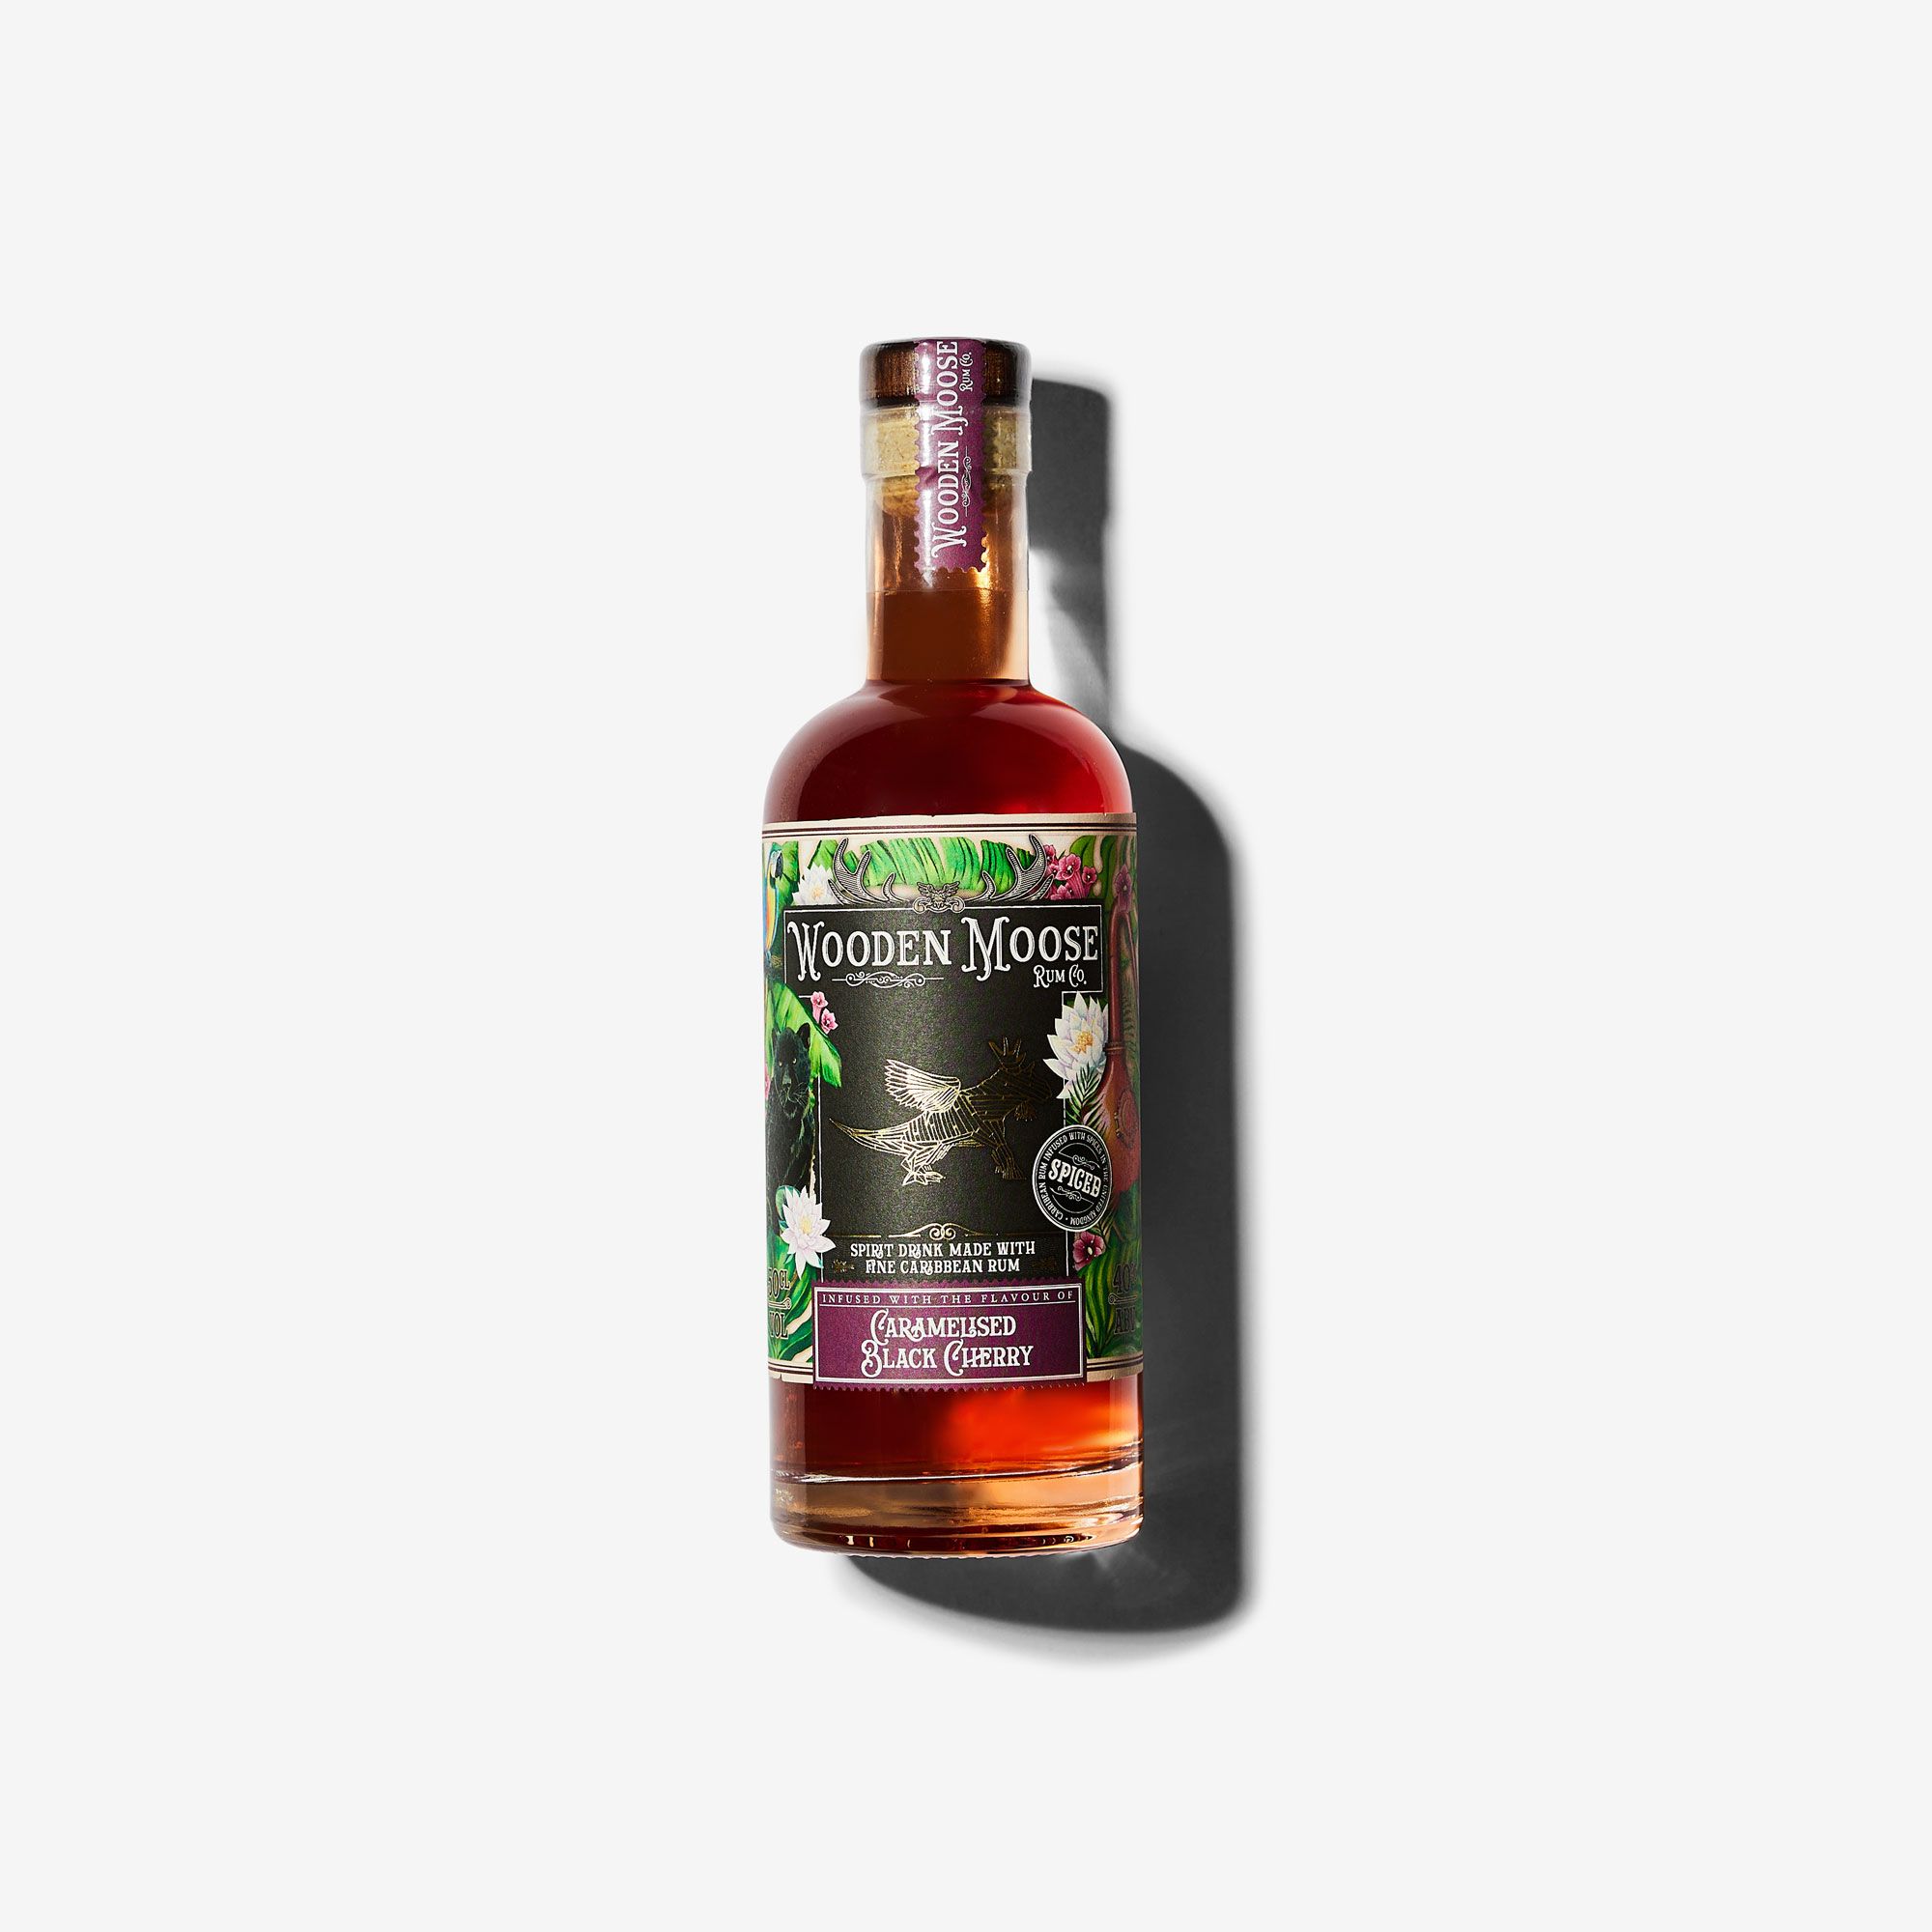 Billede af Wooden Moose Caramelised Black Cherry Spiced Rum